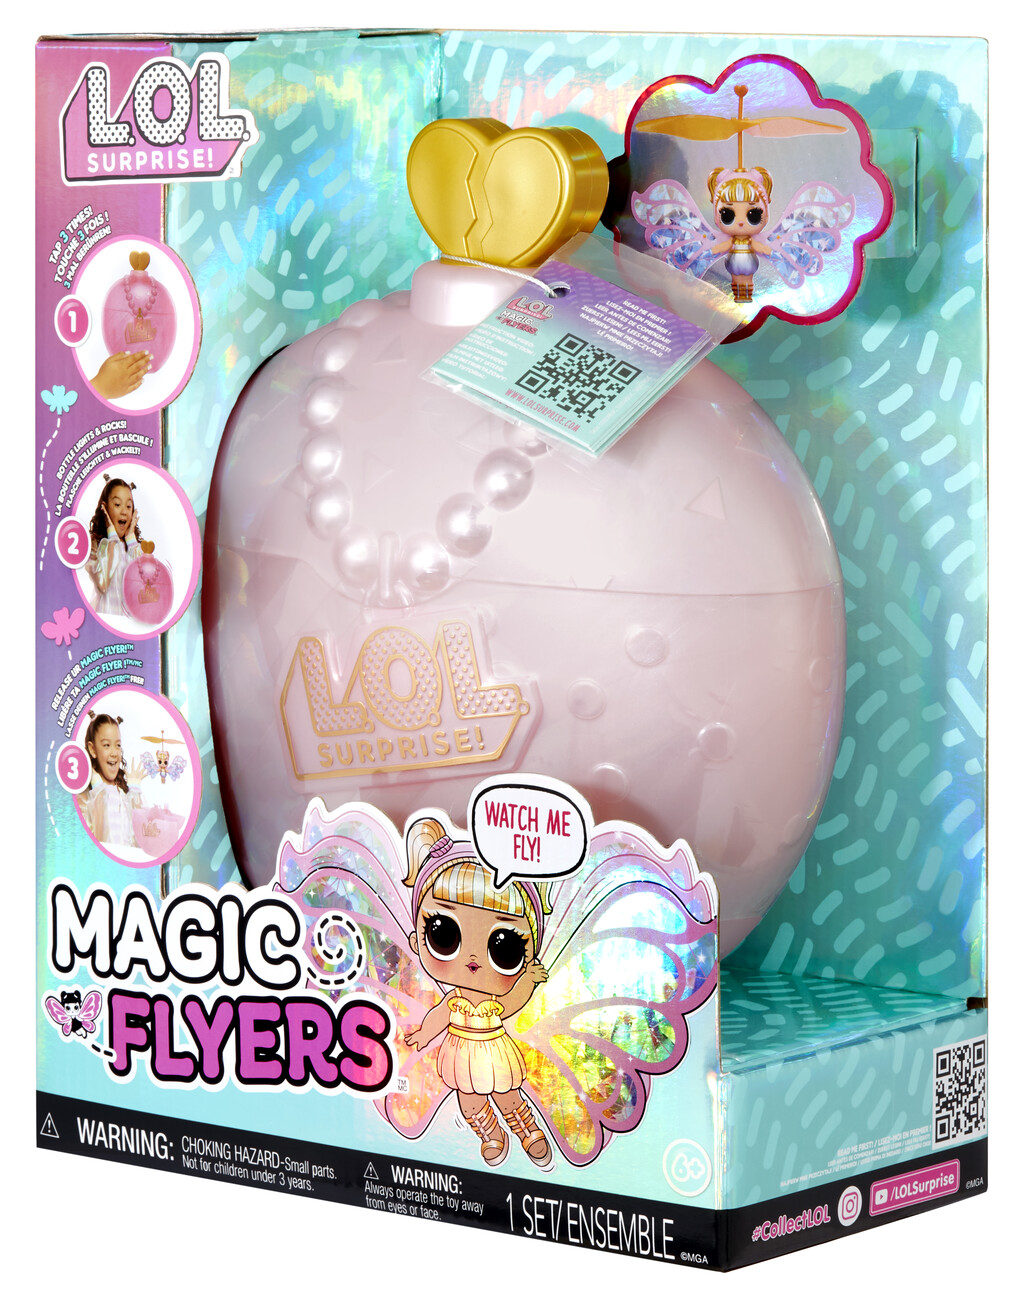 L.O.L. Surprise! Magic Flyers™ Assortment – Toy Retailers Association